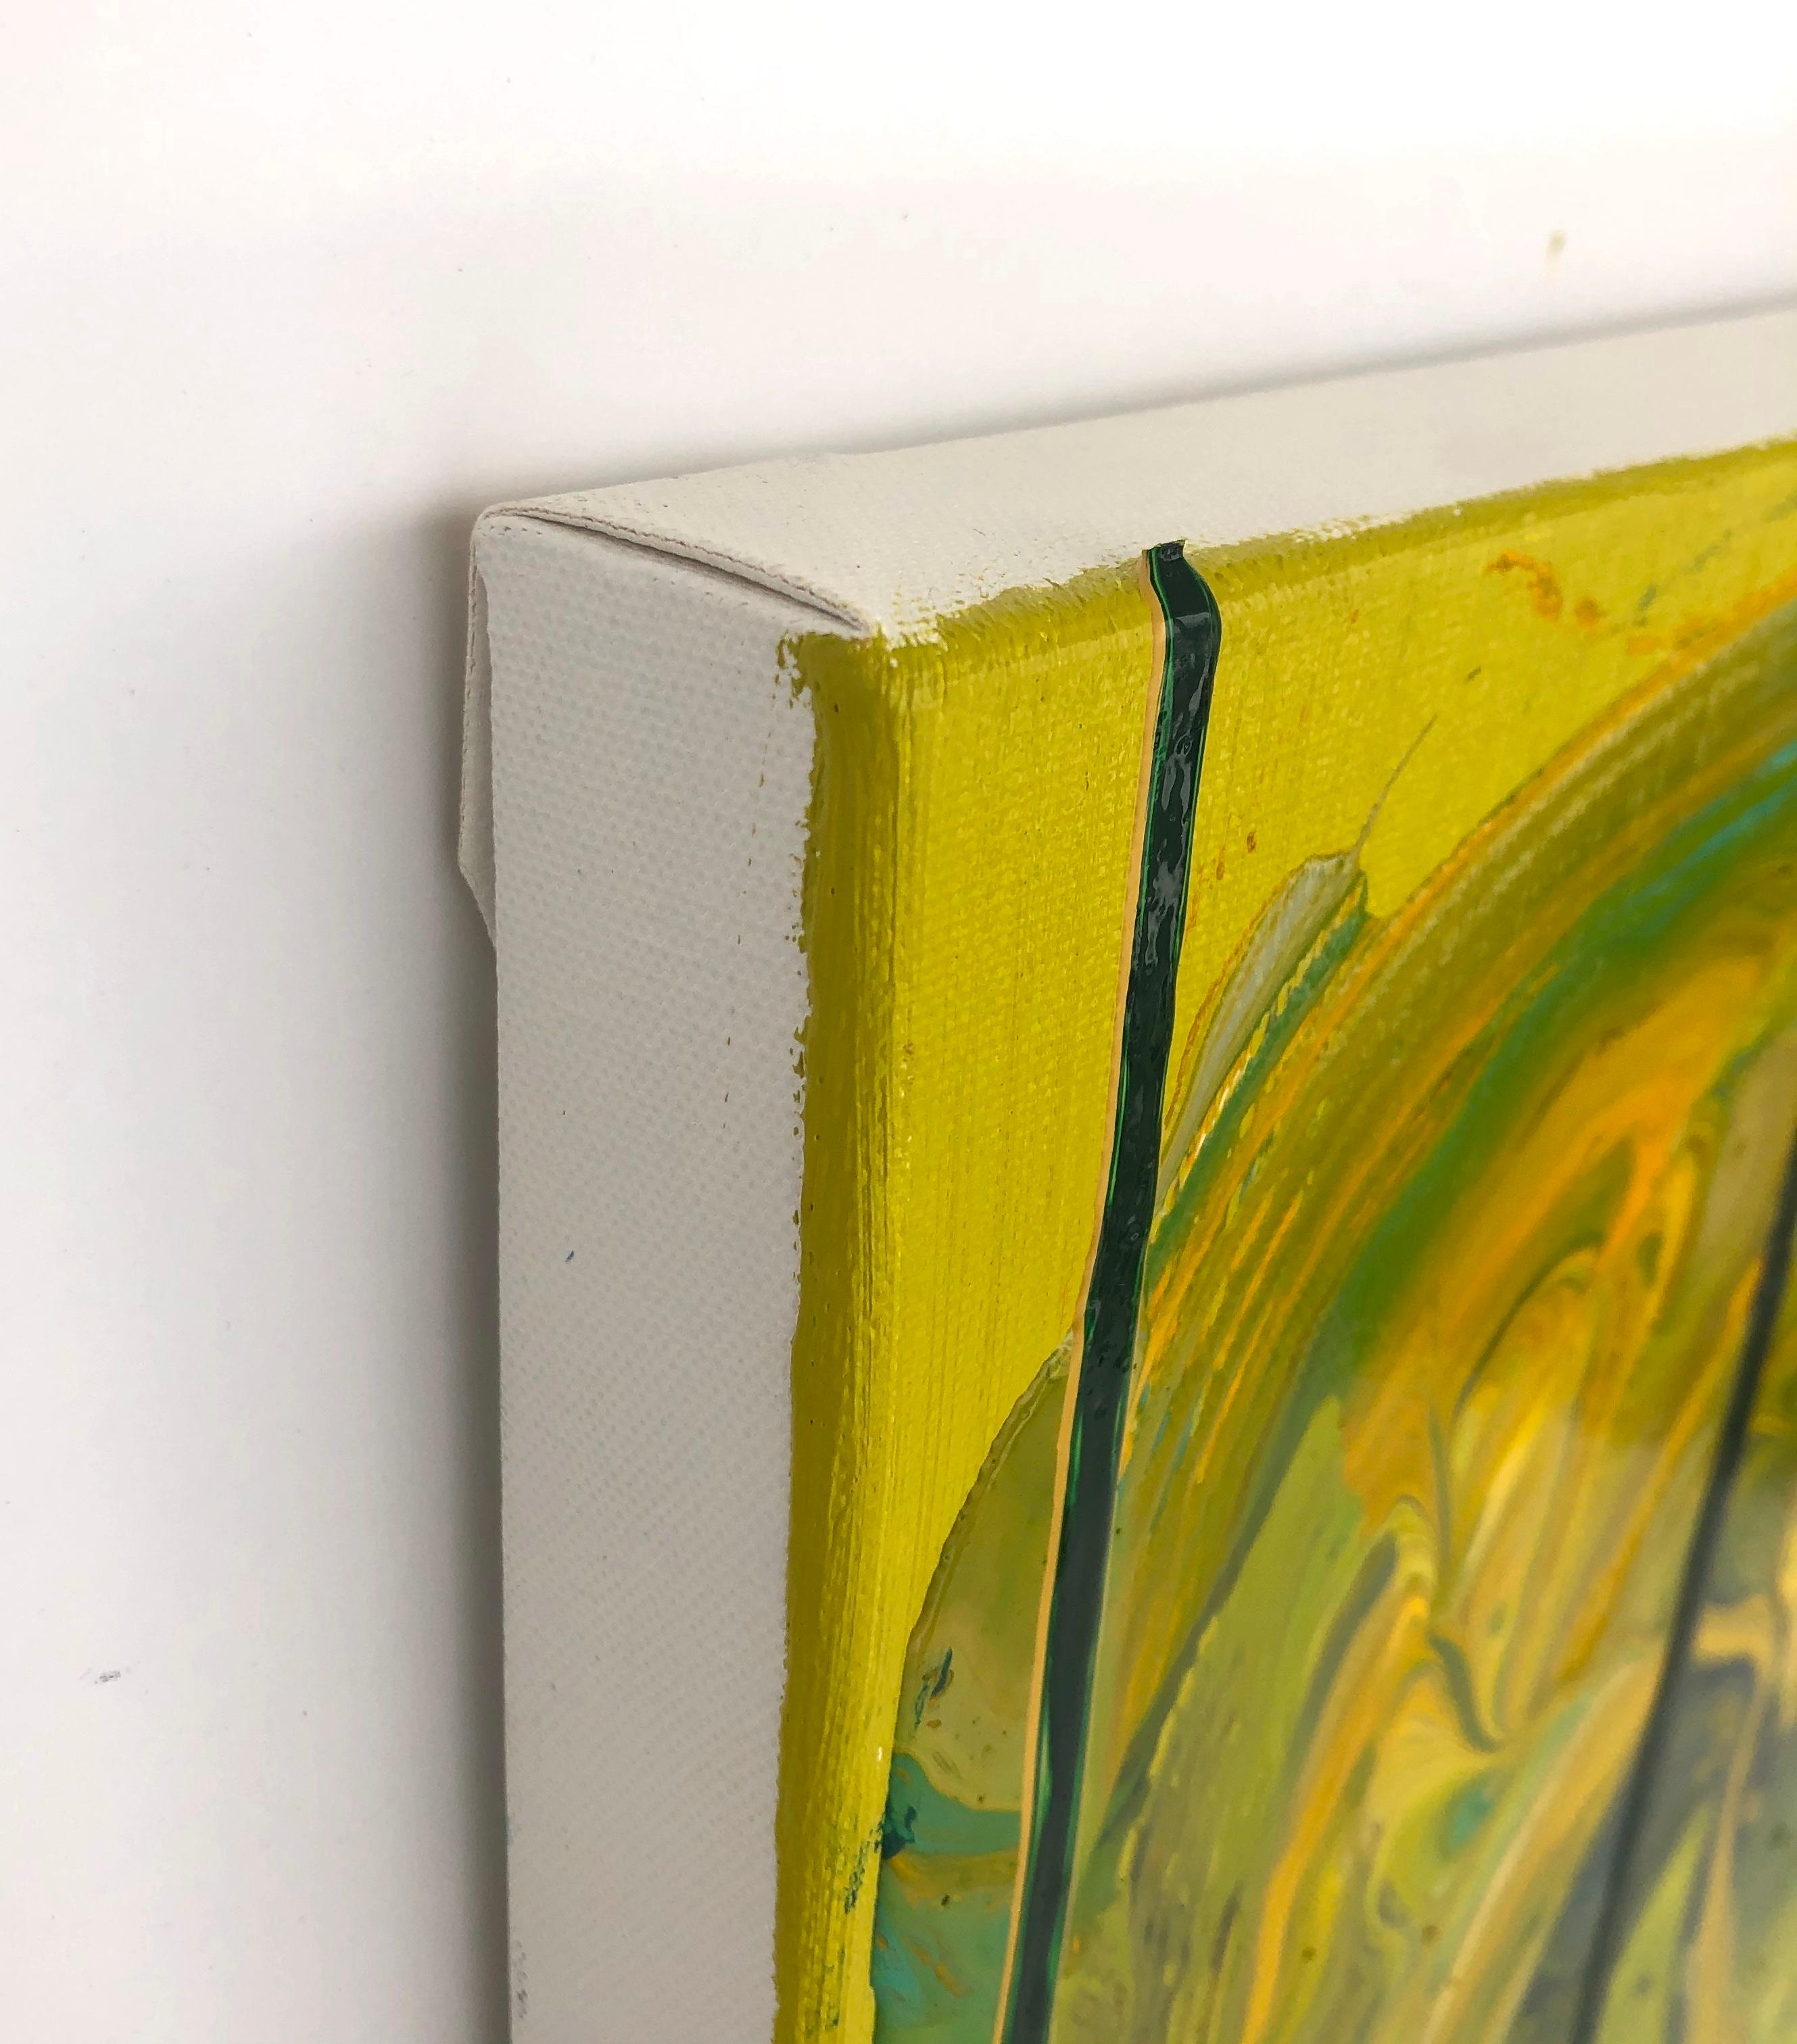 Les peintures à l'huile sur toile de Dennis Alter sont riches en couches et en textures et présentent une activité picturale intense. Des coups de pinceau gestuels, de lourds empâtements et des couches de couleurs superposées confèrent à chaque